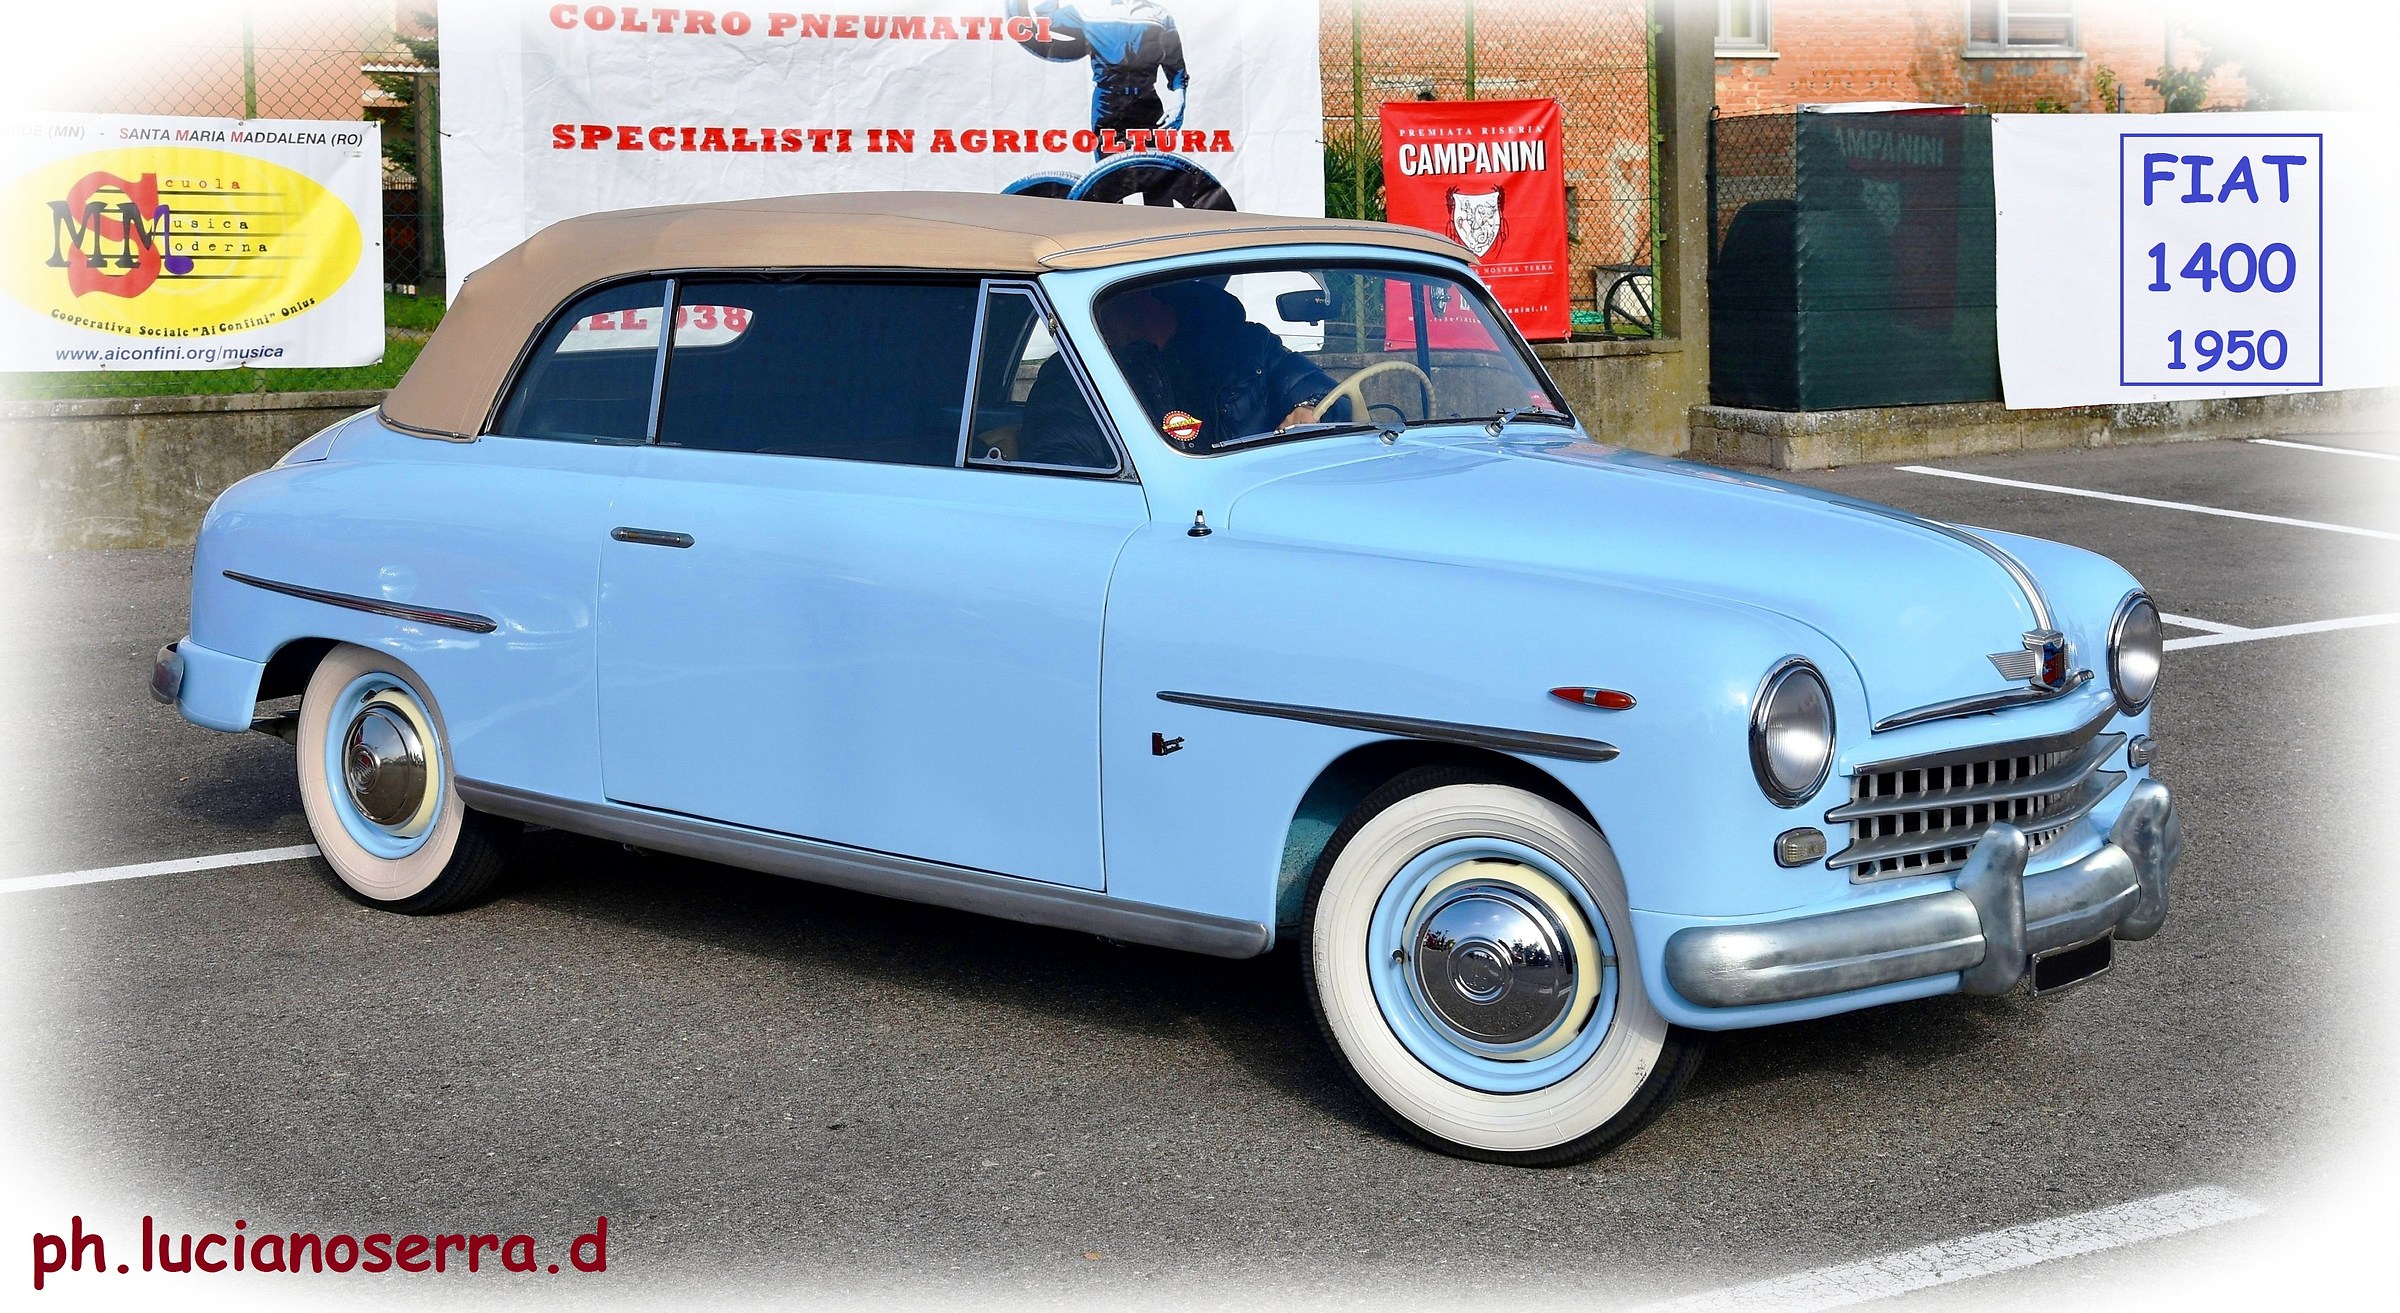 Fiat 1400 Convertibile - 1950...